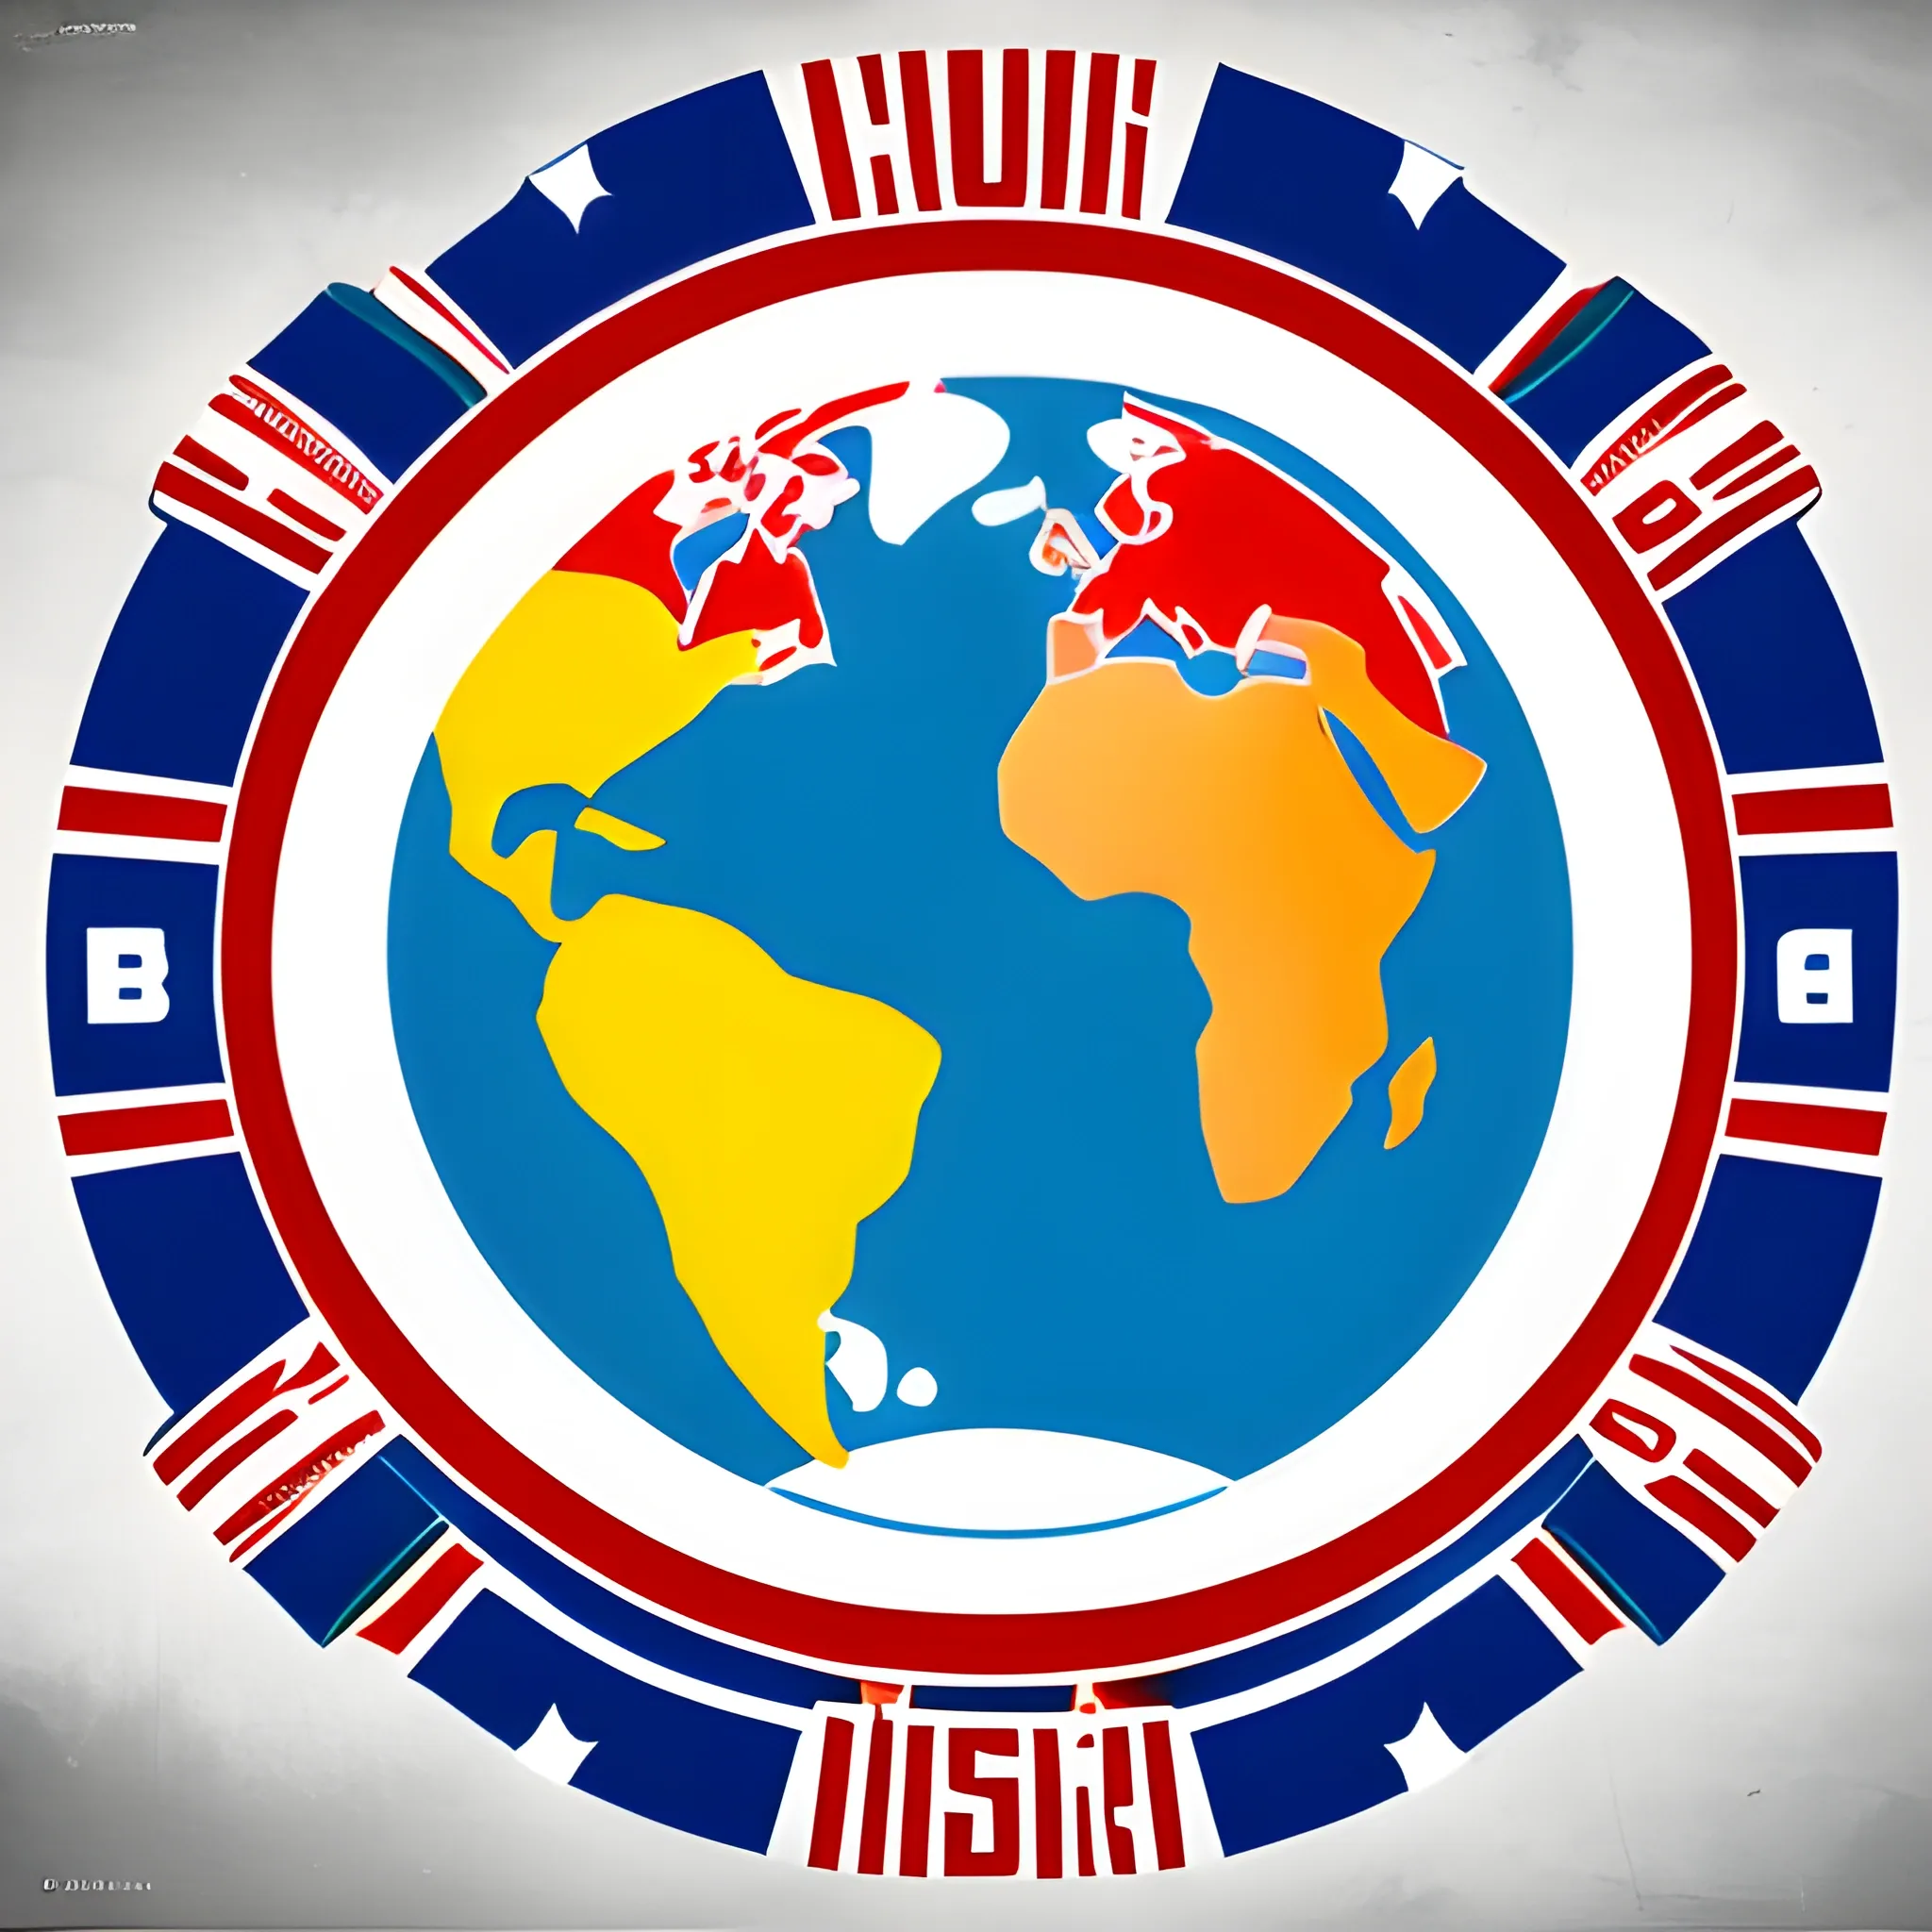 un logo con un mundo y texto mundo salsa con banderas latino americanas

